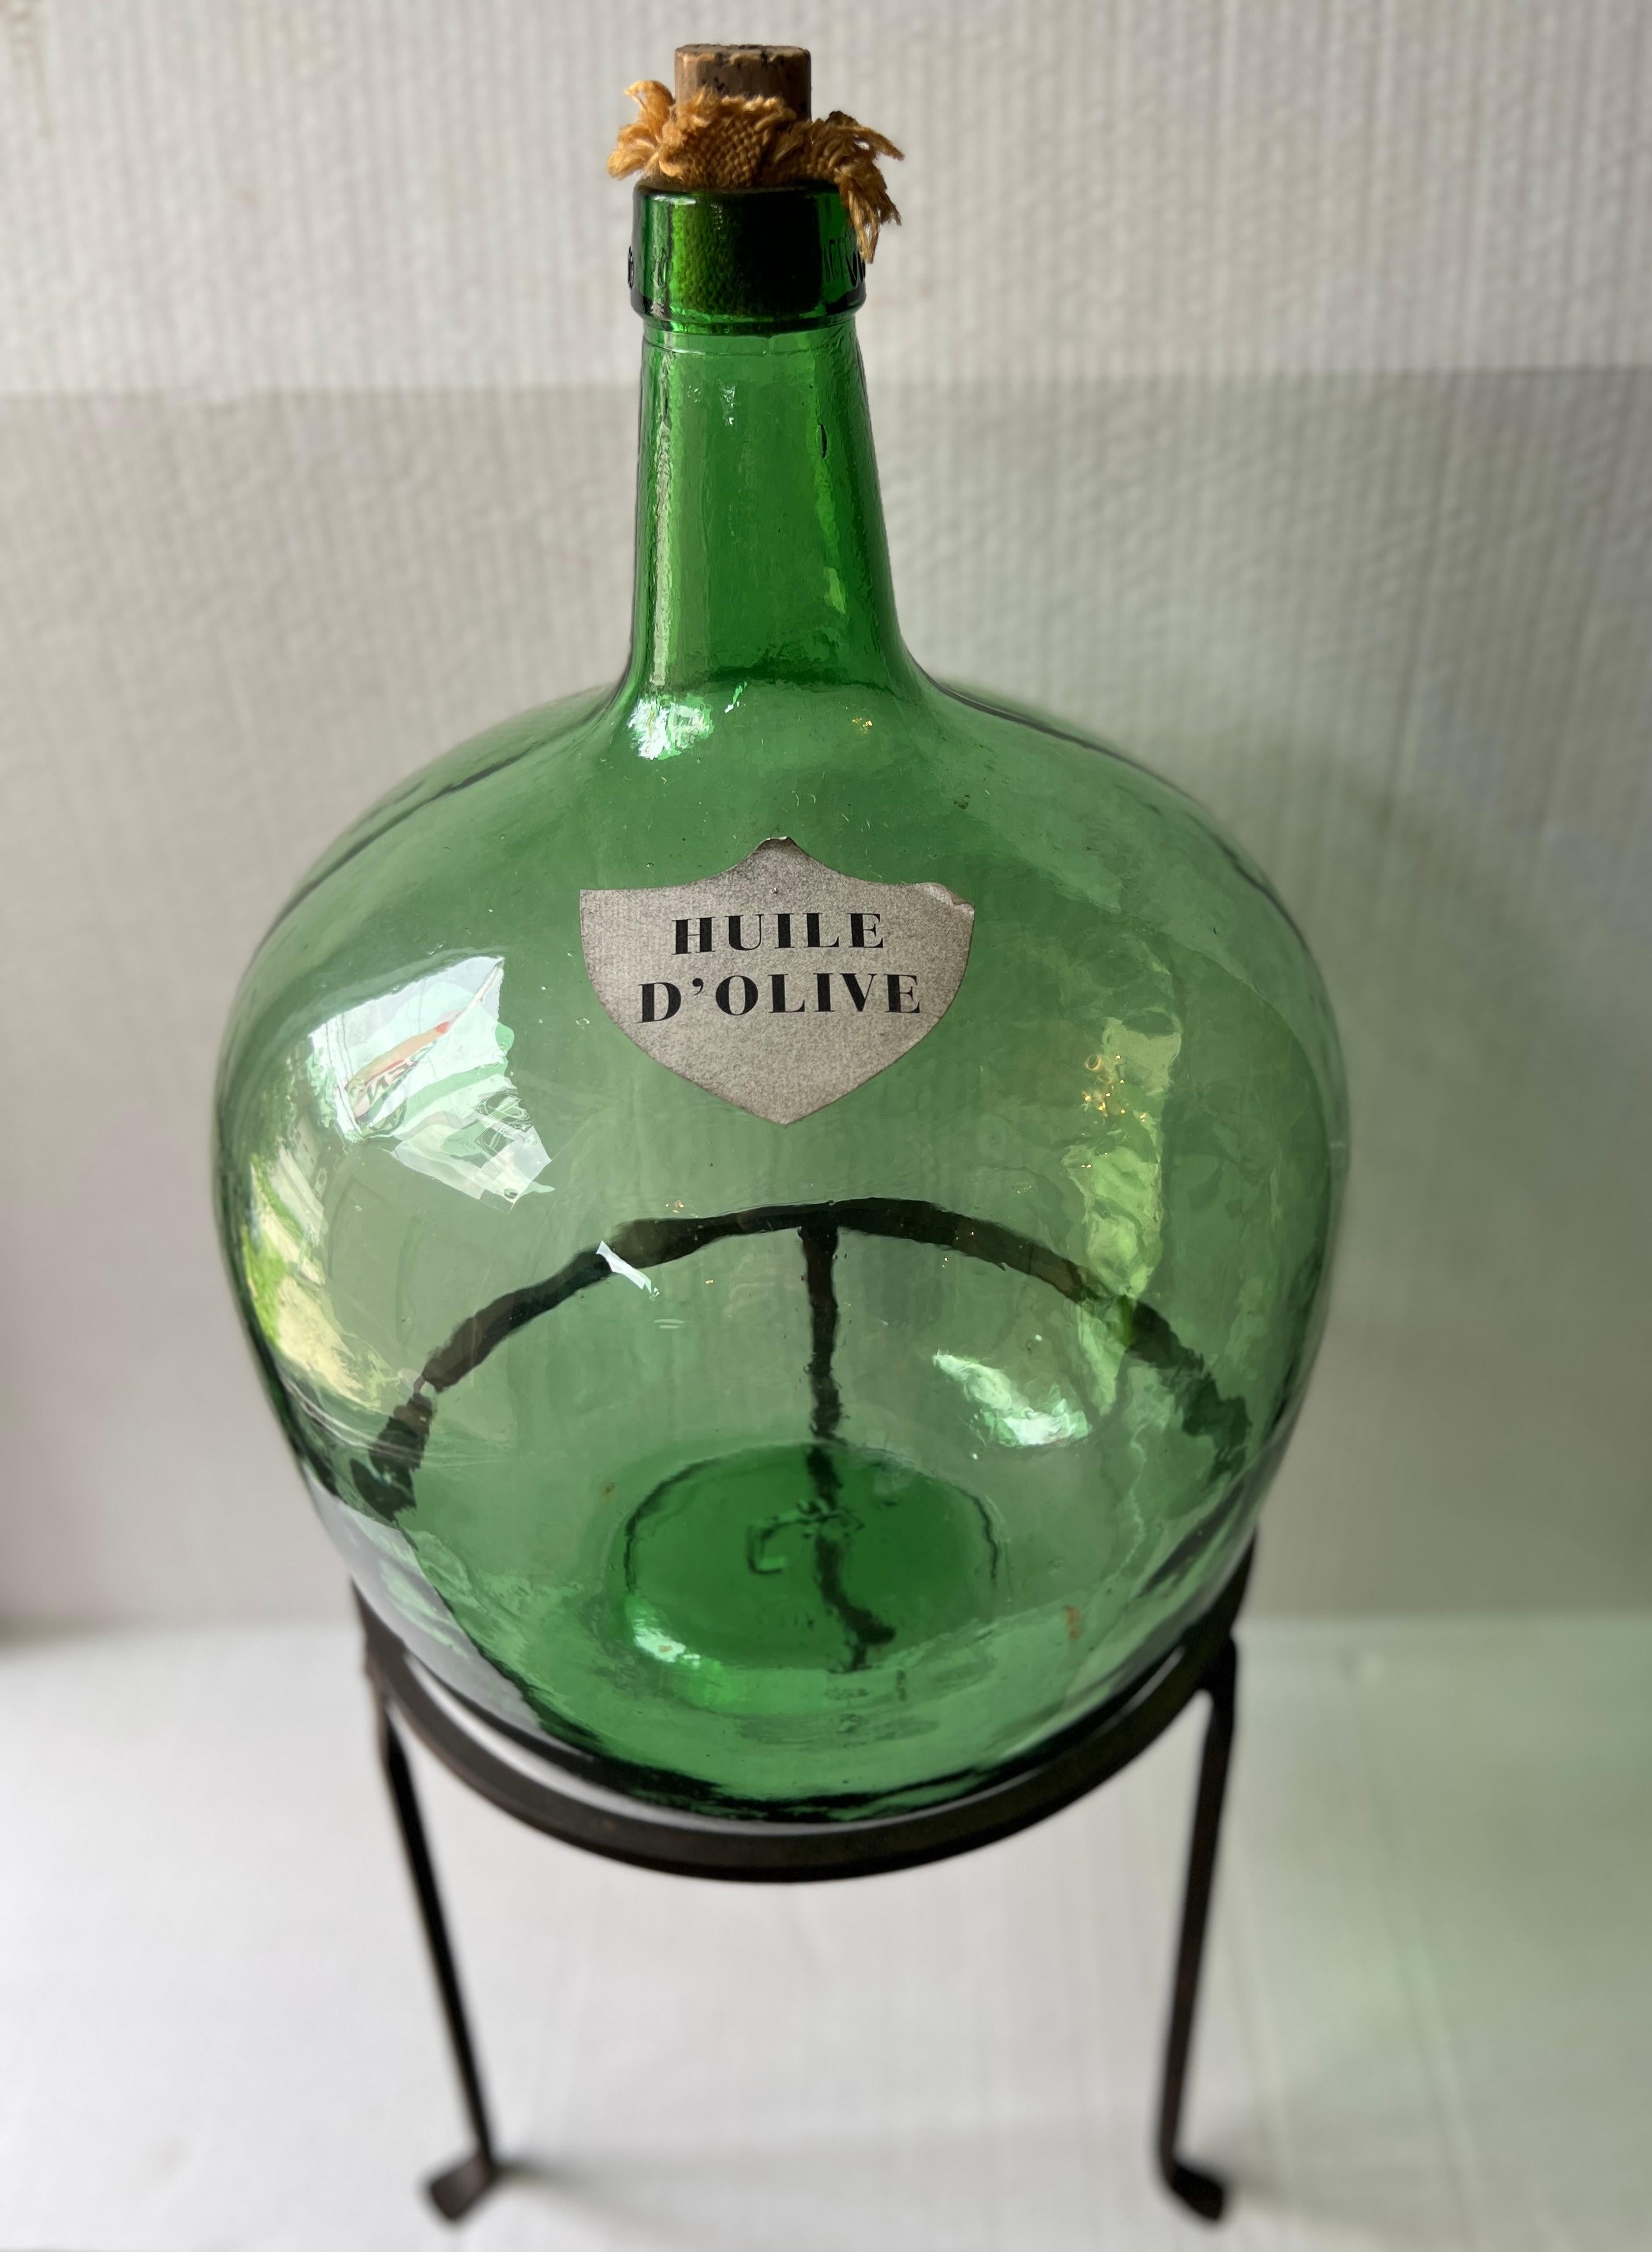 Les Demijohns en verre vert de l'huile d'olive française sont de charmants récipients en verre d'époque qui contenaient autrefois de l'huile d'olive aromatique et qui servent aujourd'hui d'élégants éléments de décoration.

Le support en fer forgé